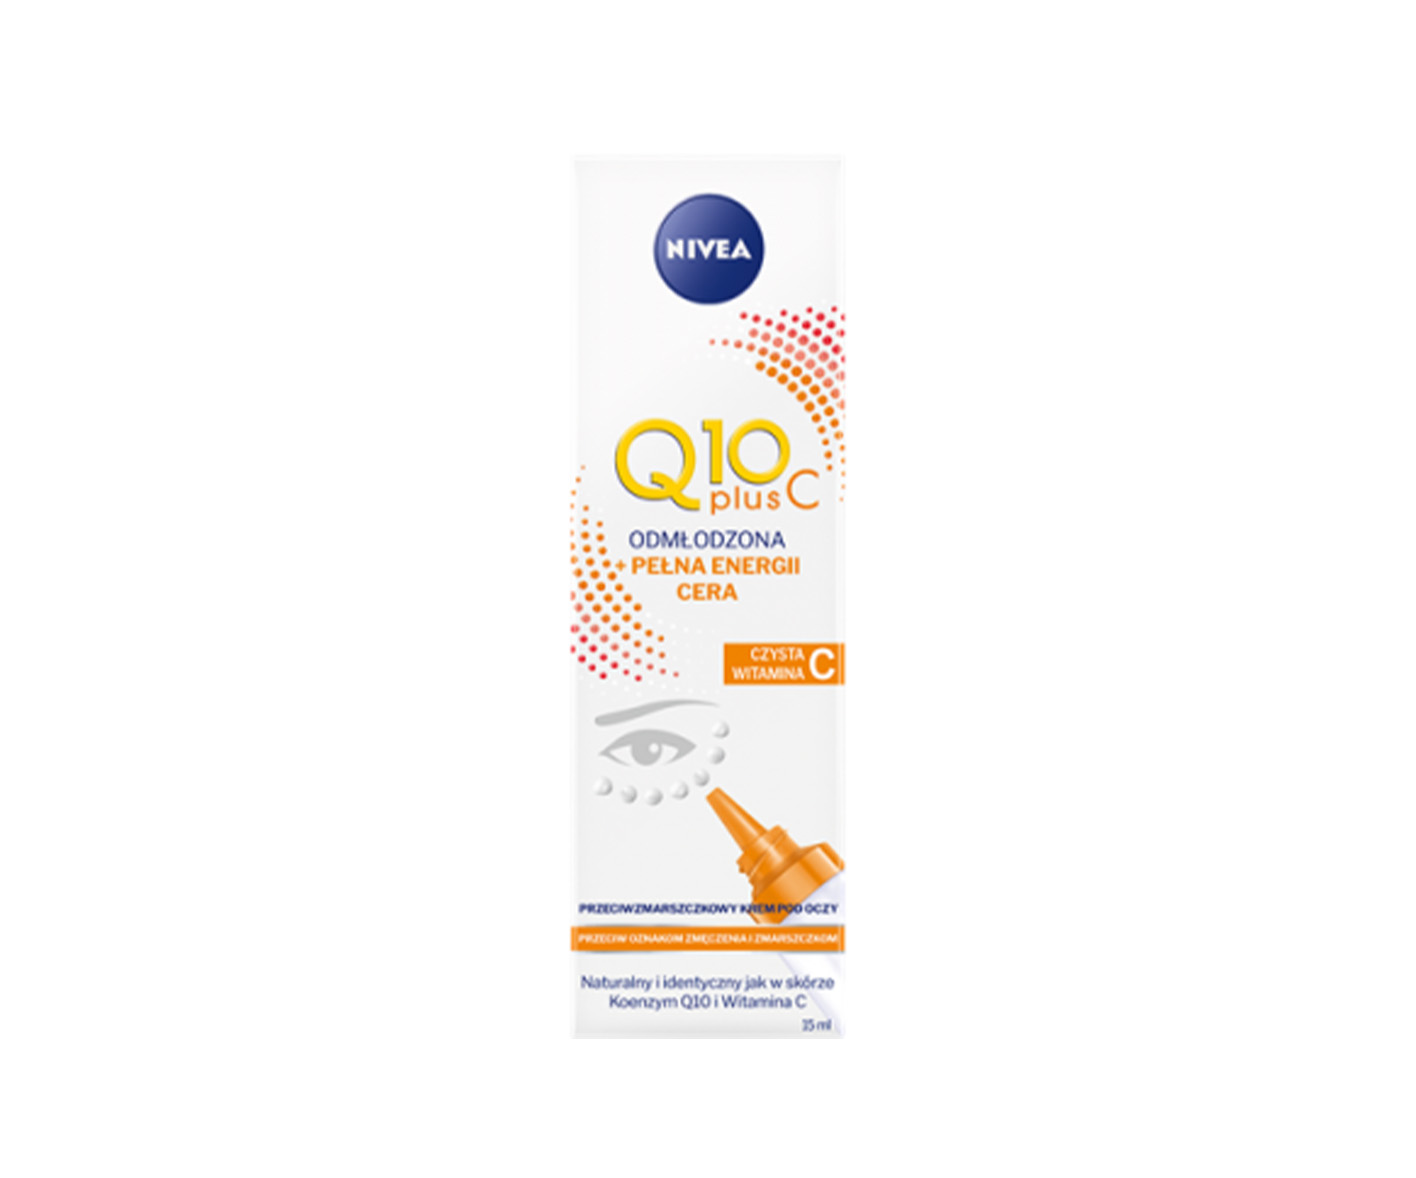 Nivea Q10 Plus C, eye cream with vitamin C